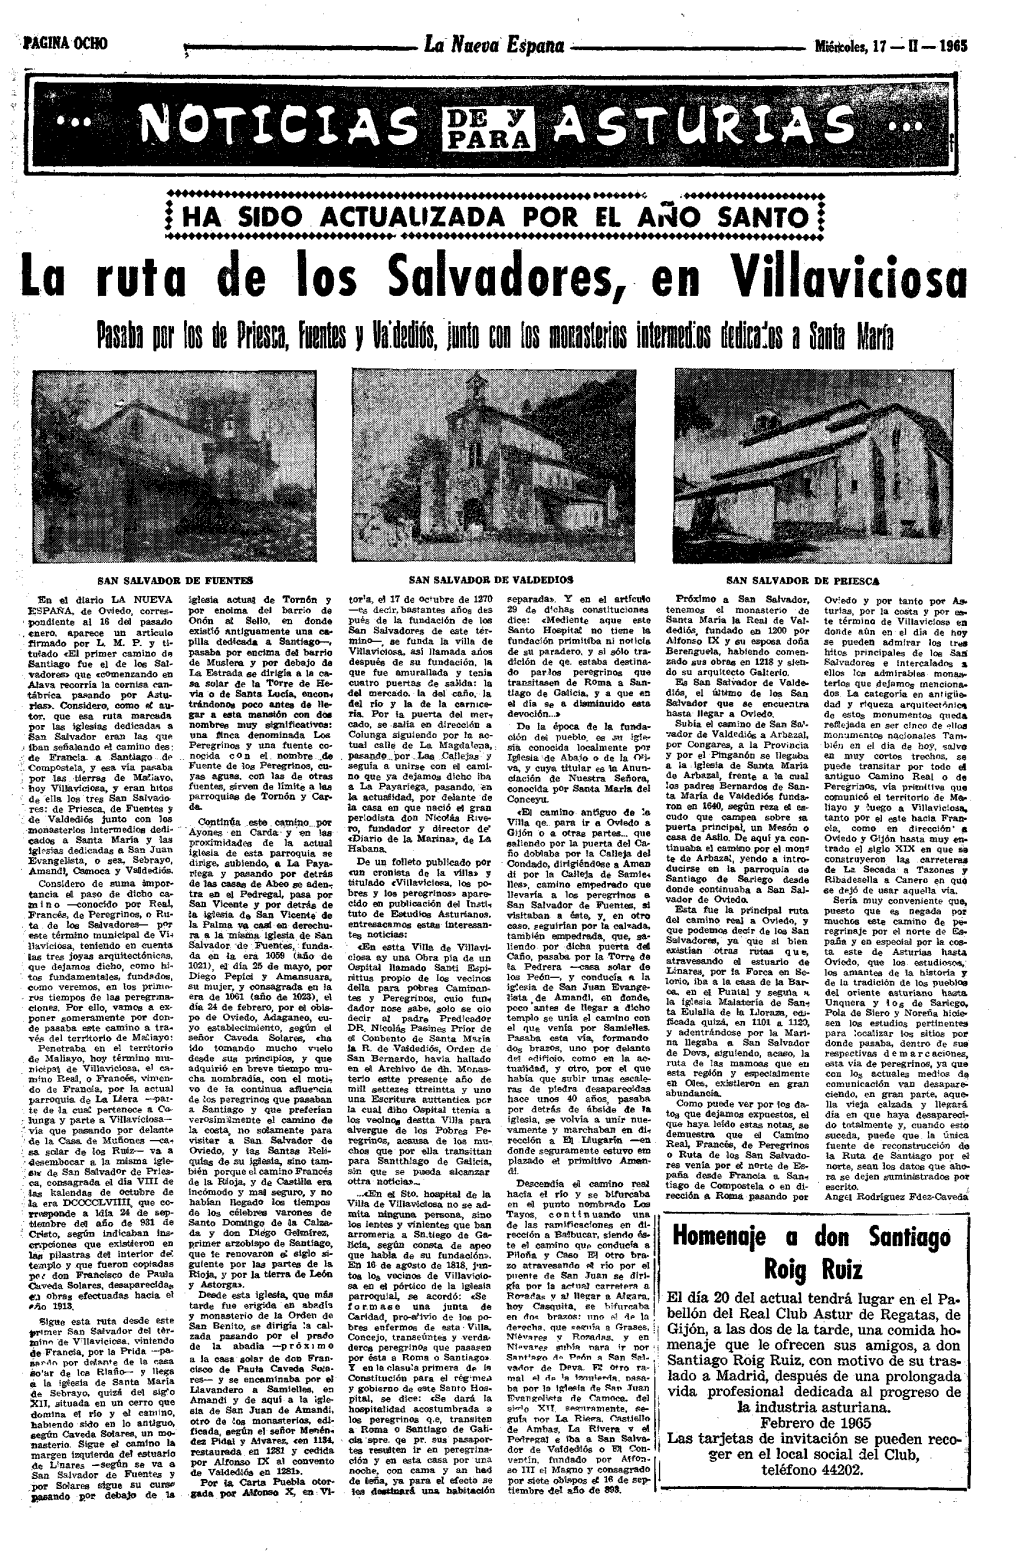 17/02/1965 Publicada En LA NUEVA